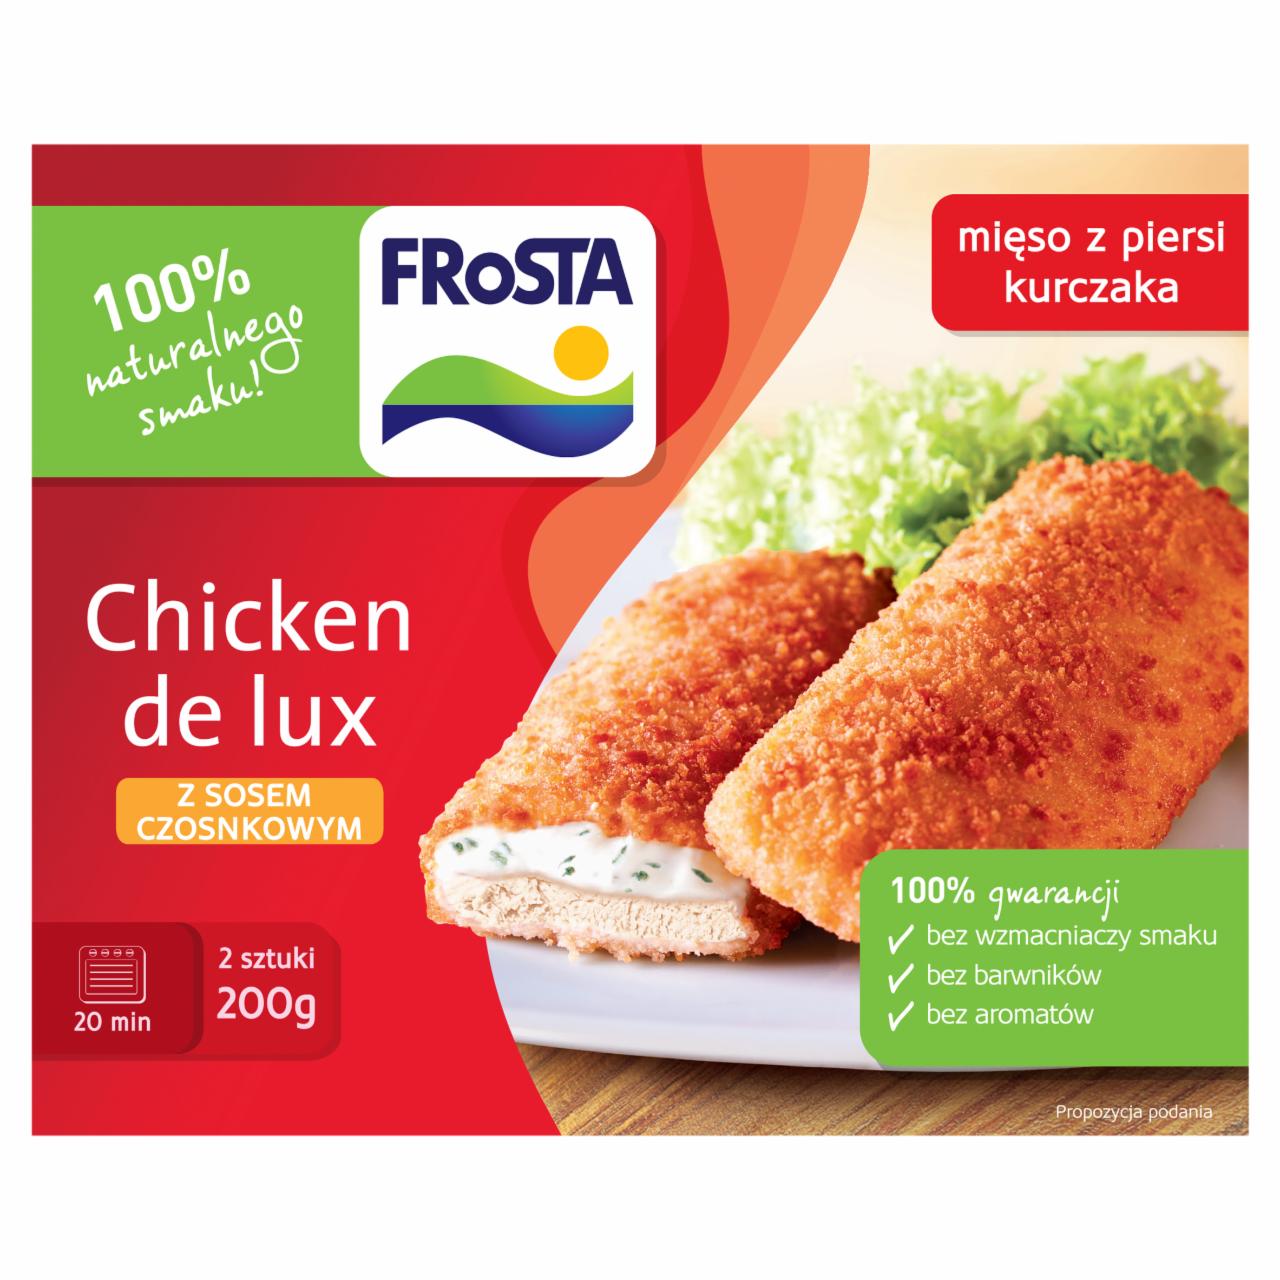 Zdjęcia - FRoSTA Chicken de lux z sosem czosnkowym 200 g (2 sztuki)